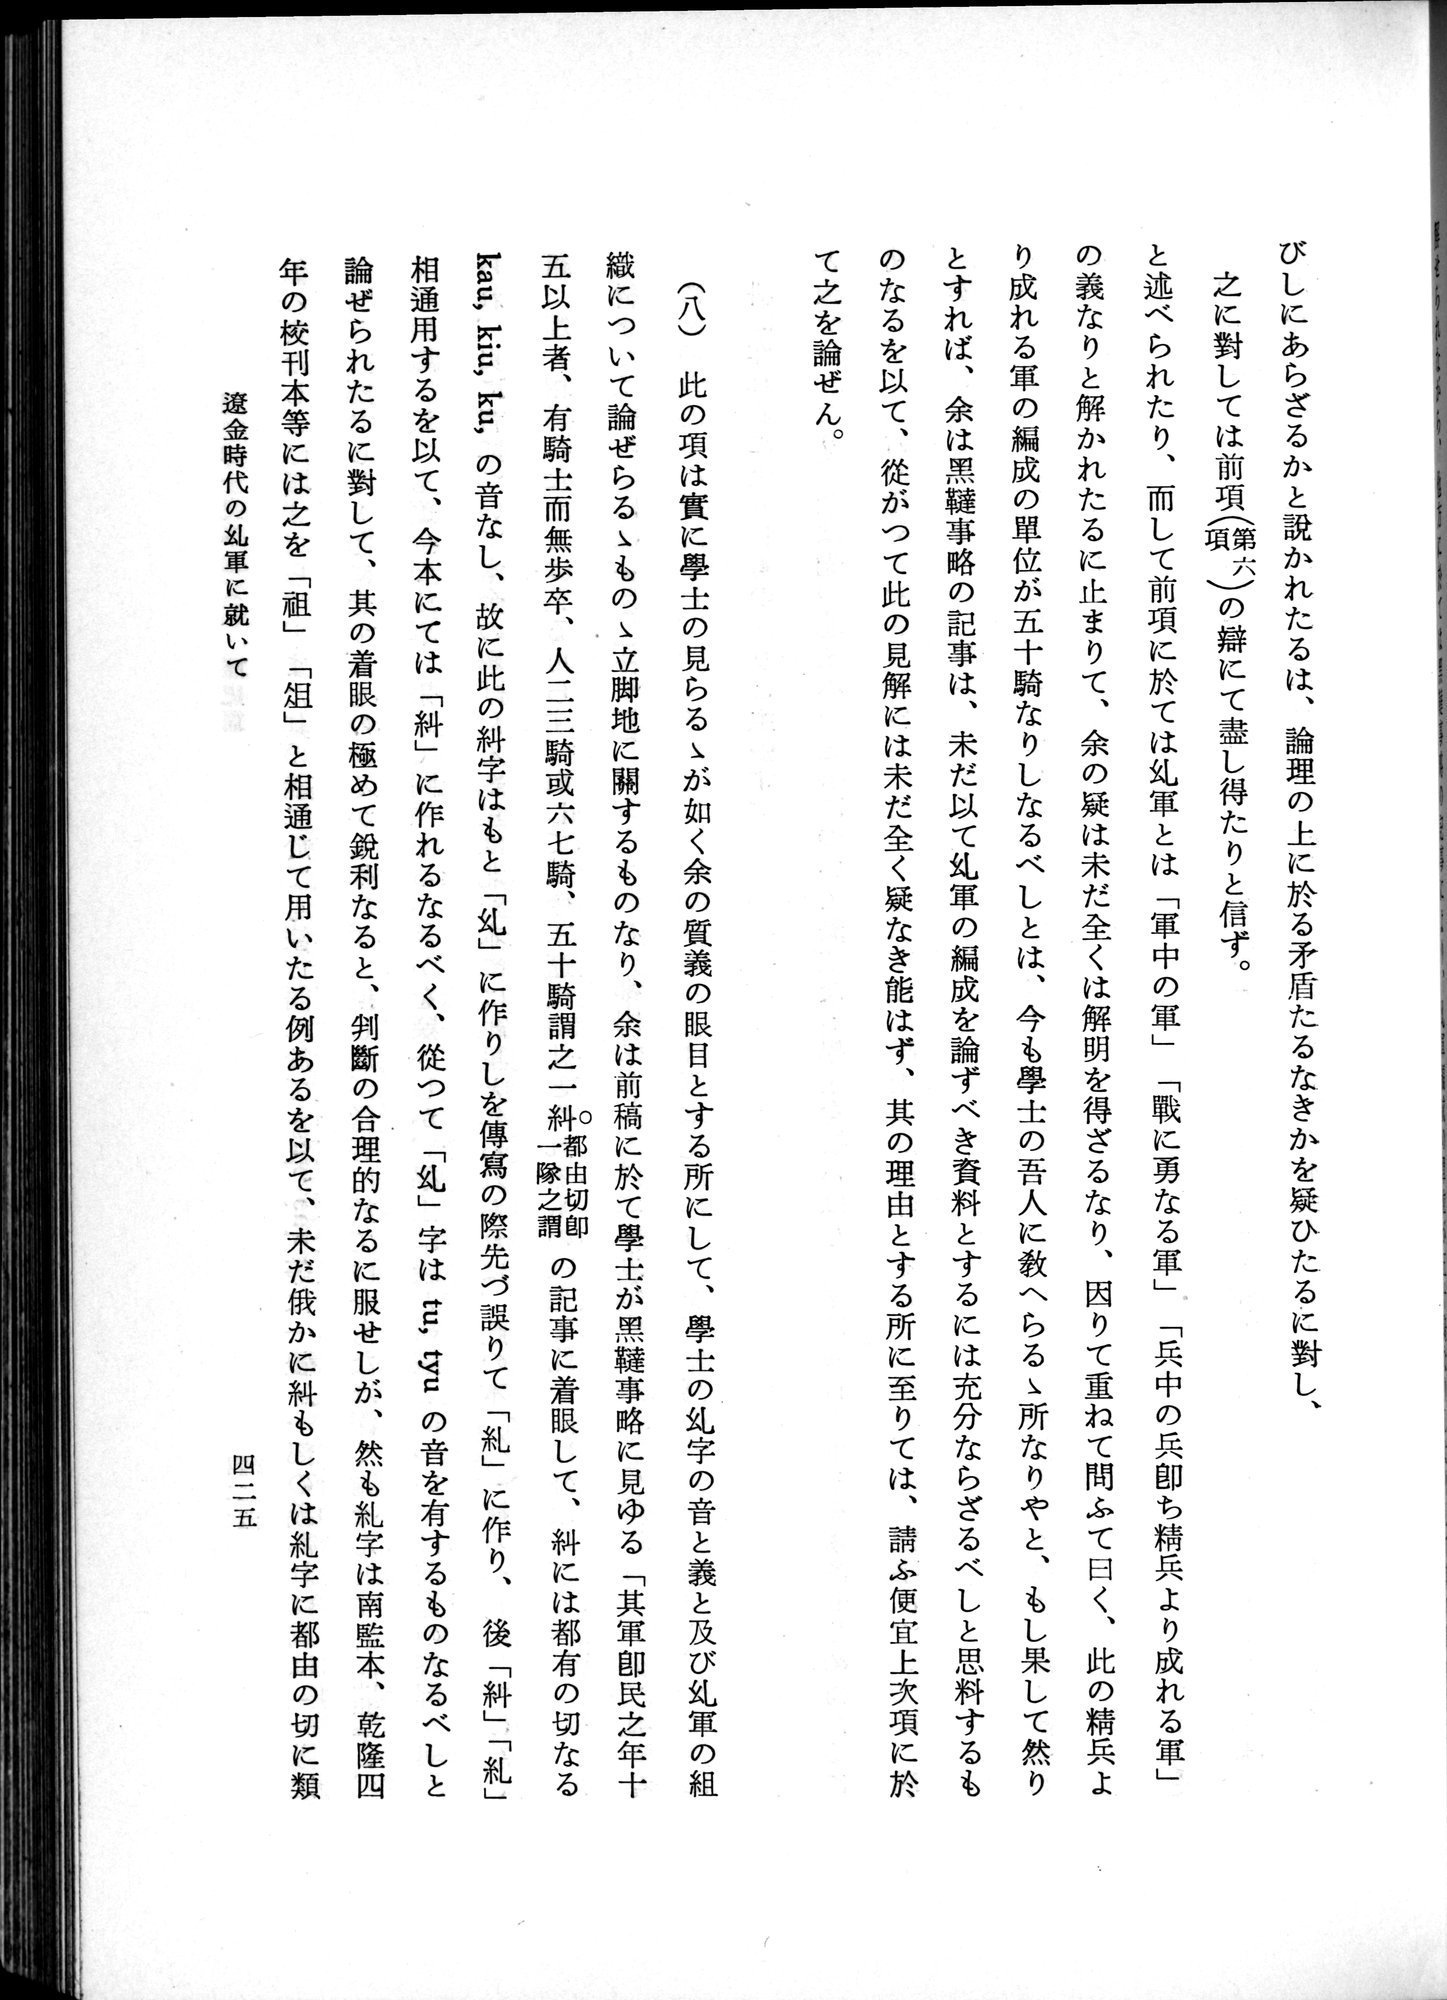 羽田博士史学論文集 : vol.1 / Page 463 (Grayscale High Resolution Image)